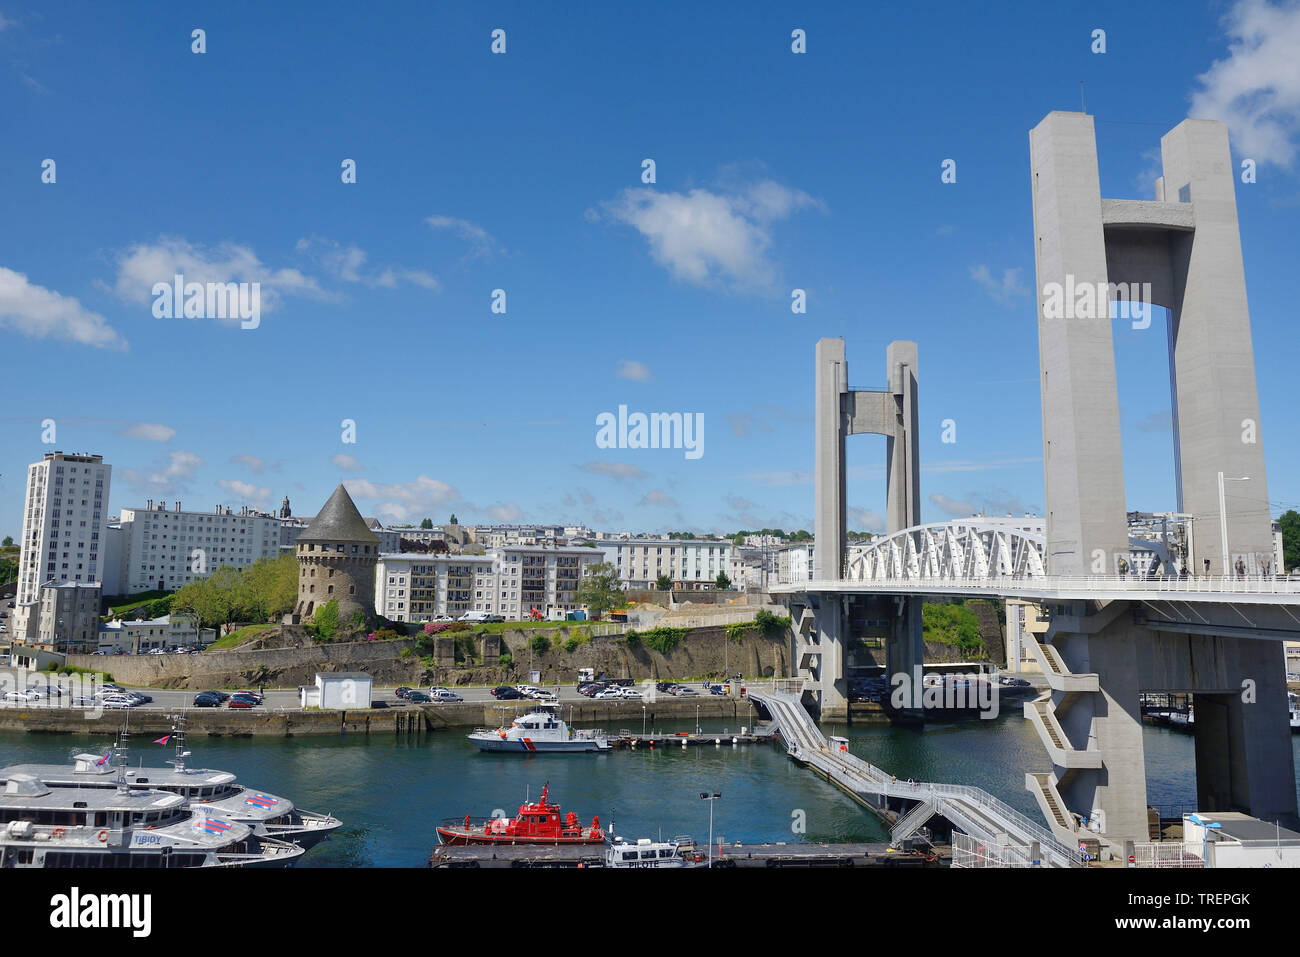 Brest (Bretagna, a nord-ovest della Francia): distretto di La Recouvrance con la torre " Tour Tanguy', il fiume Penfeld, il ponte di Recouvrance e apartme Foto Stock